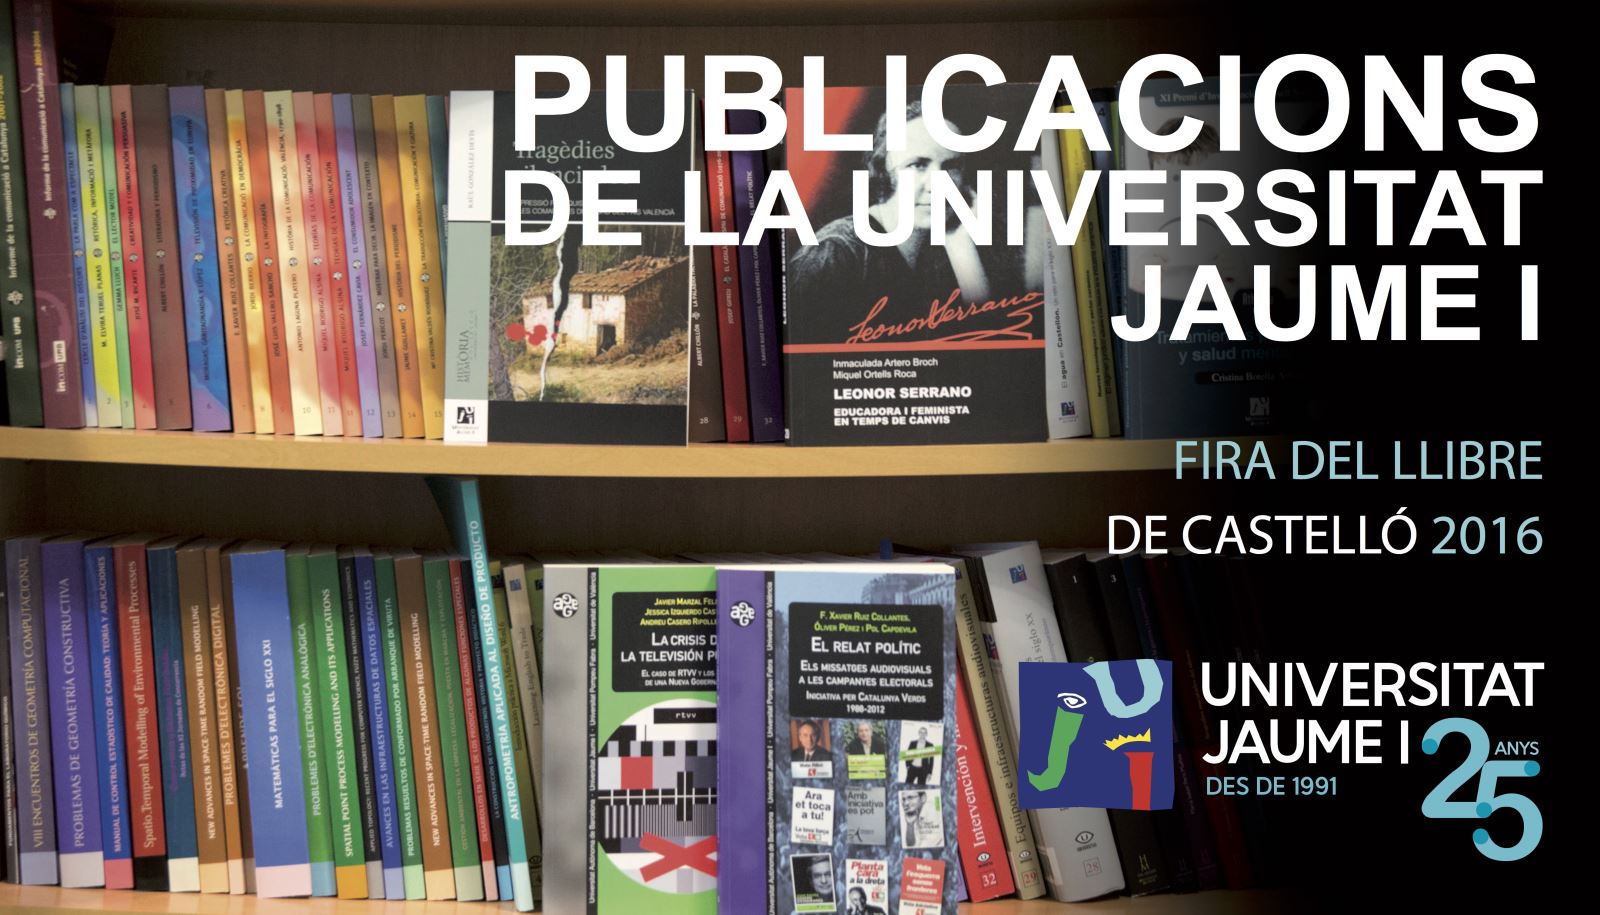 La Universitat Jaume I presenta novedades en la Feria del Libro de Castellón 2016